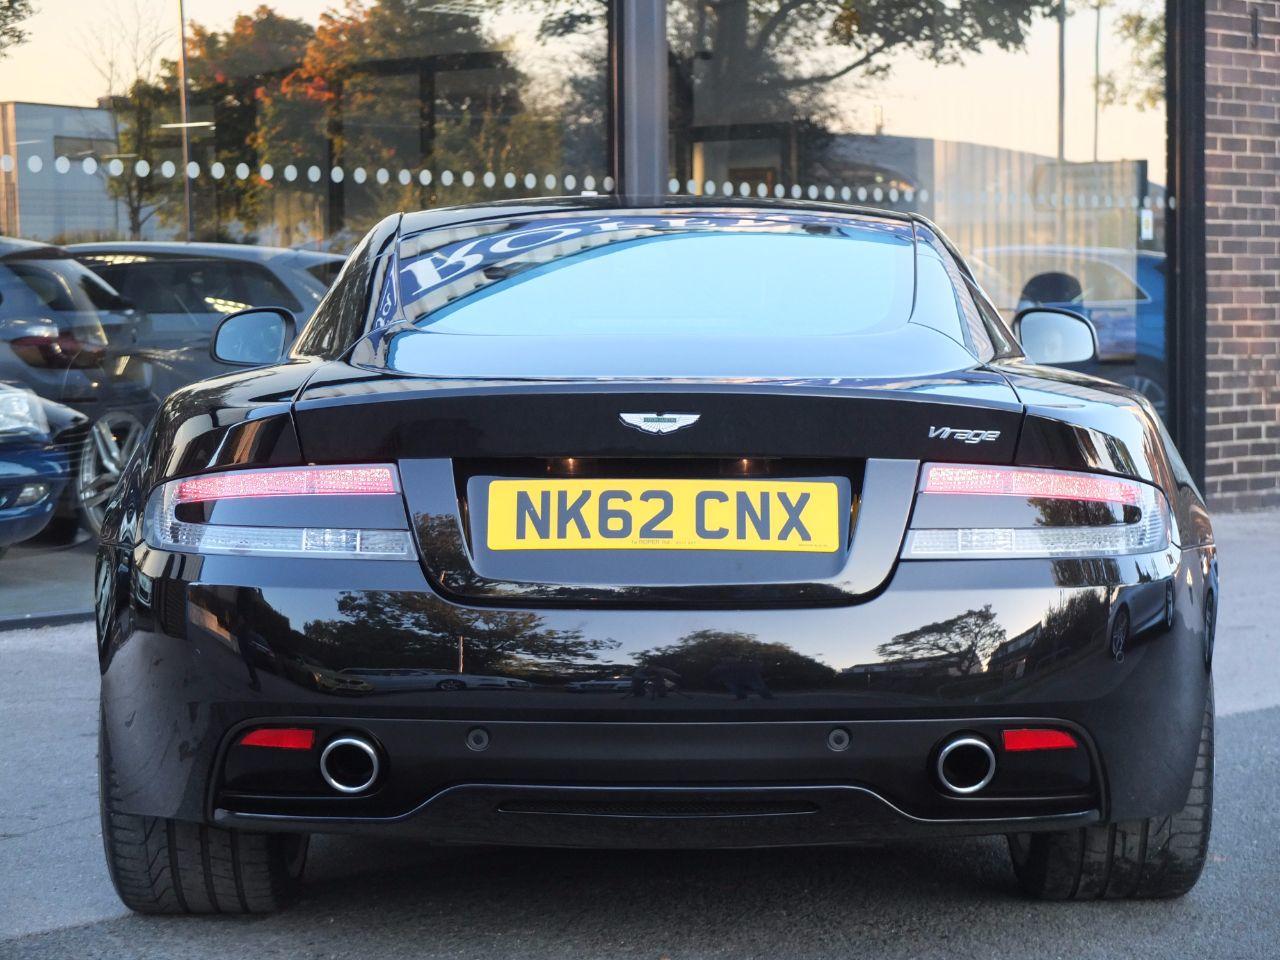 Aston Martin Virage 5.9 V12 Coupe Touchtronic Auto Coupe Petrol Onyx Black Metallic